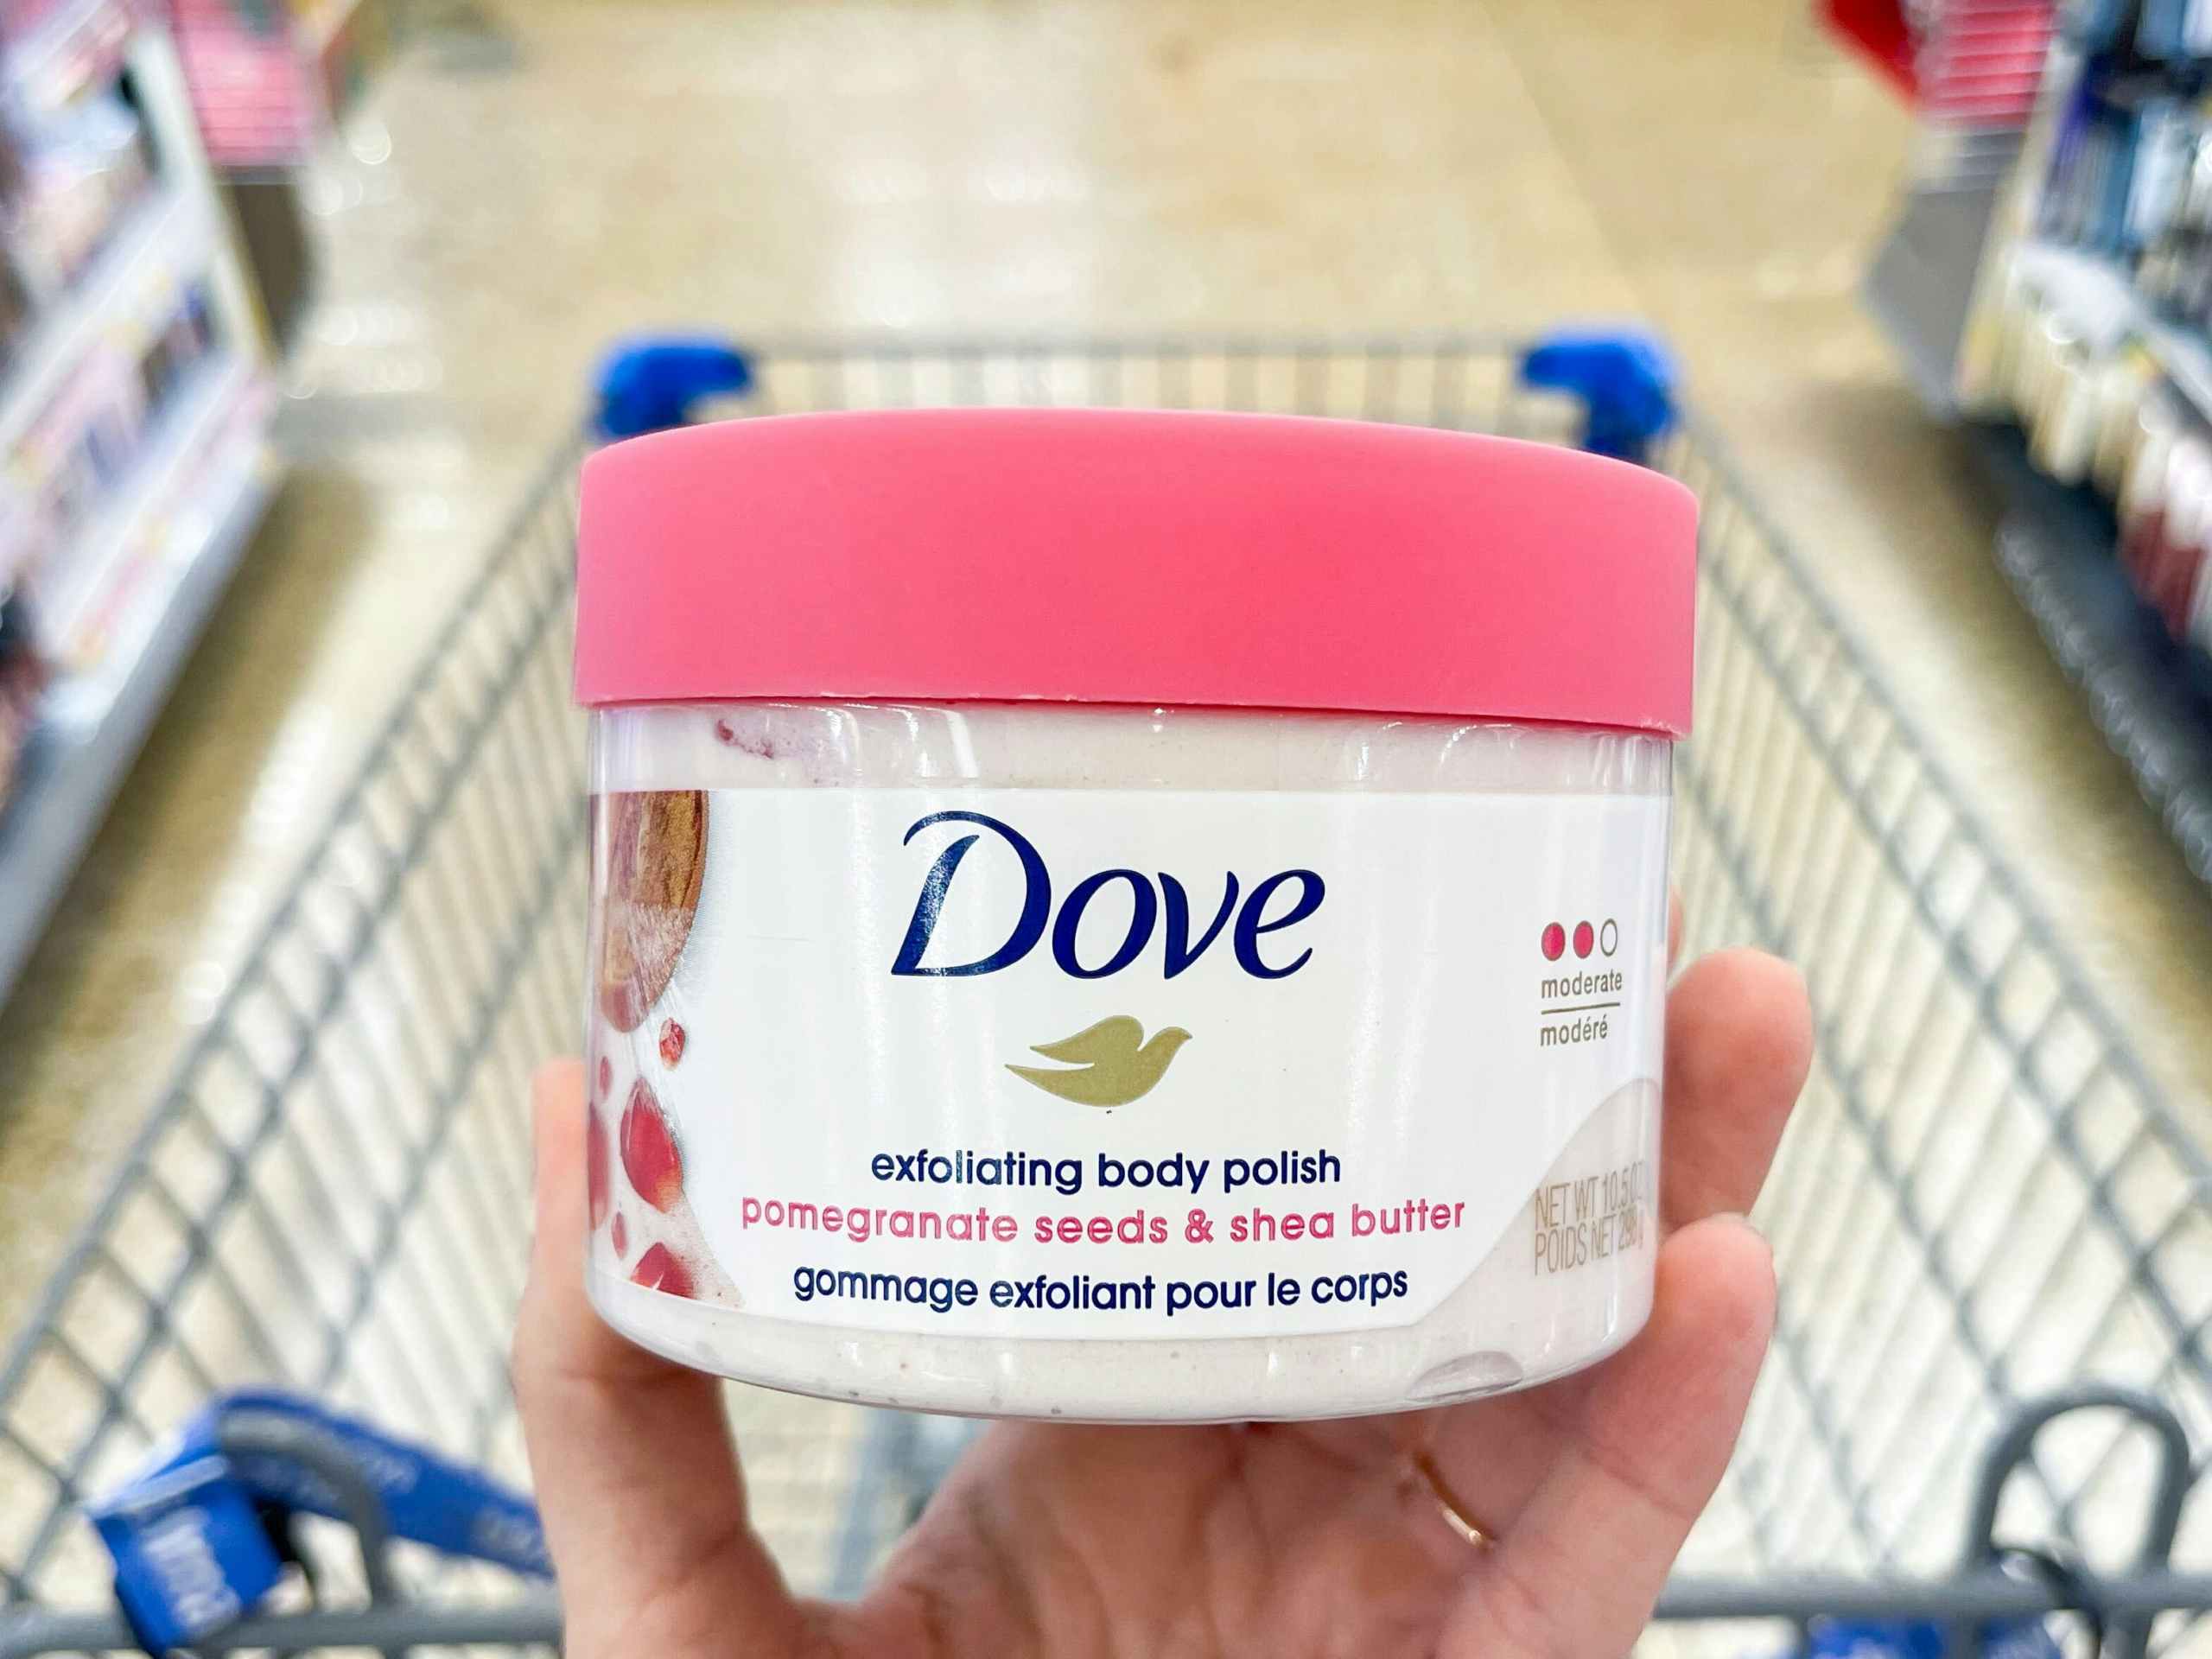 Dove Body Scrub, as Low as $3.64 on Amazon